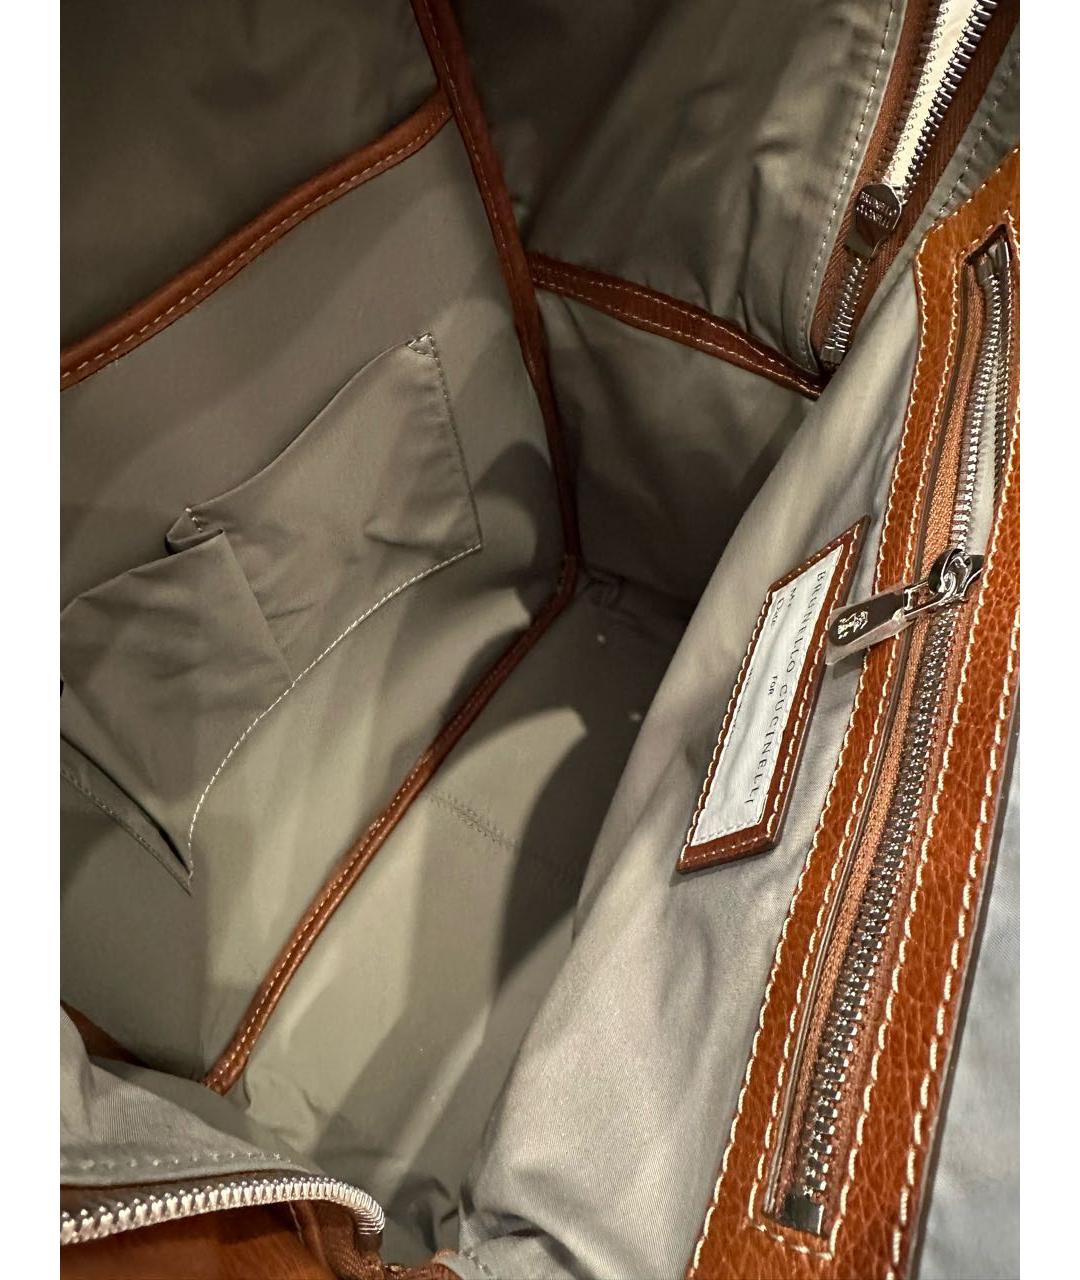 BRUNELLO CUCINELLI Коричневый кожаный рюкзак, фото 4